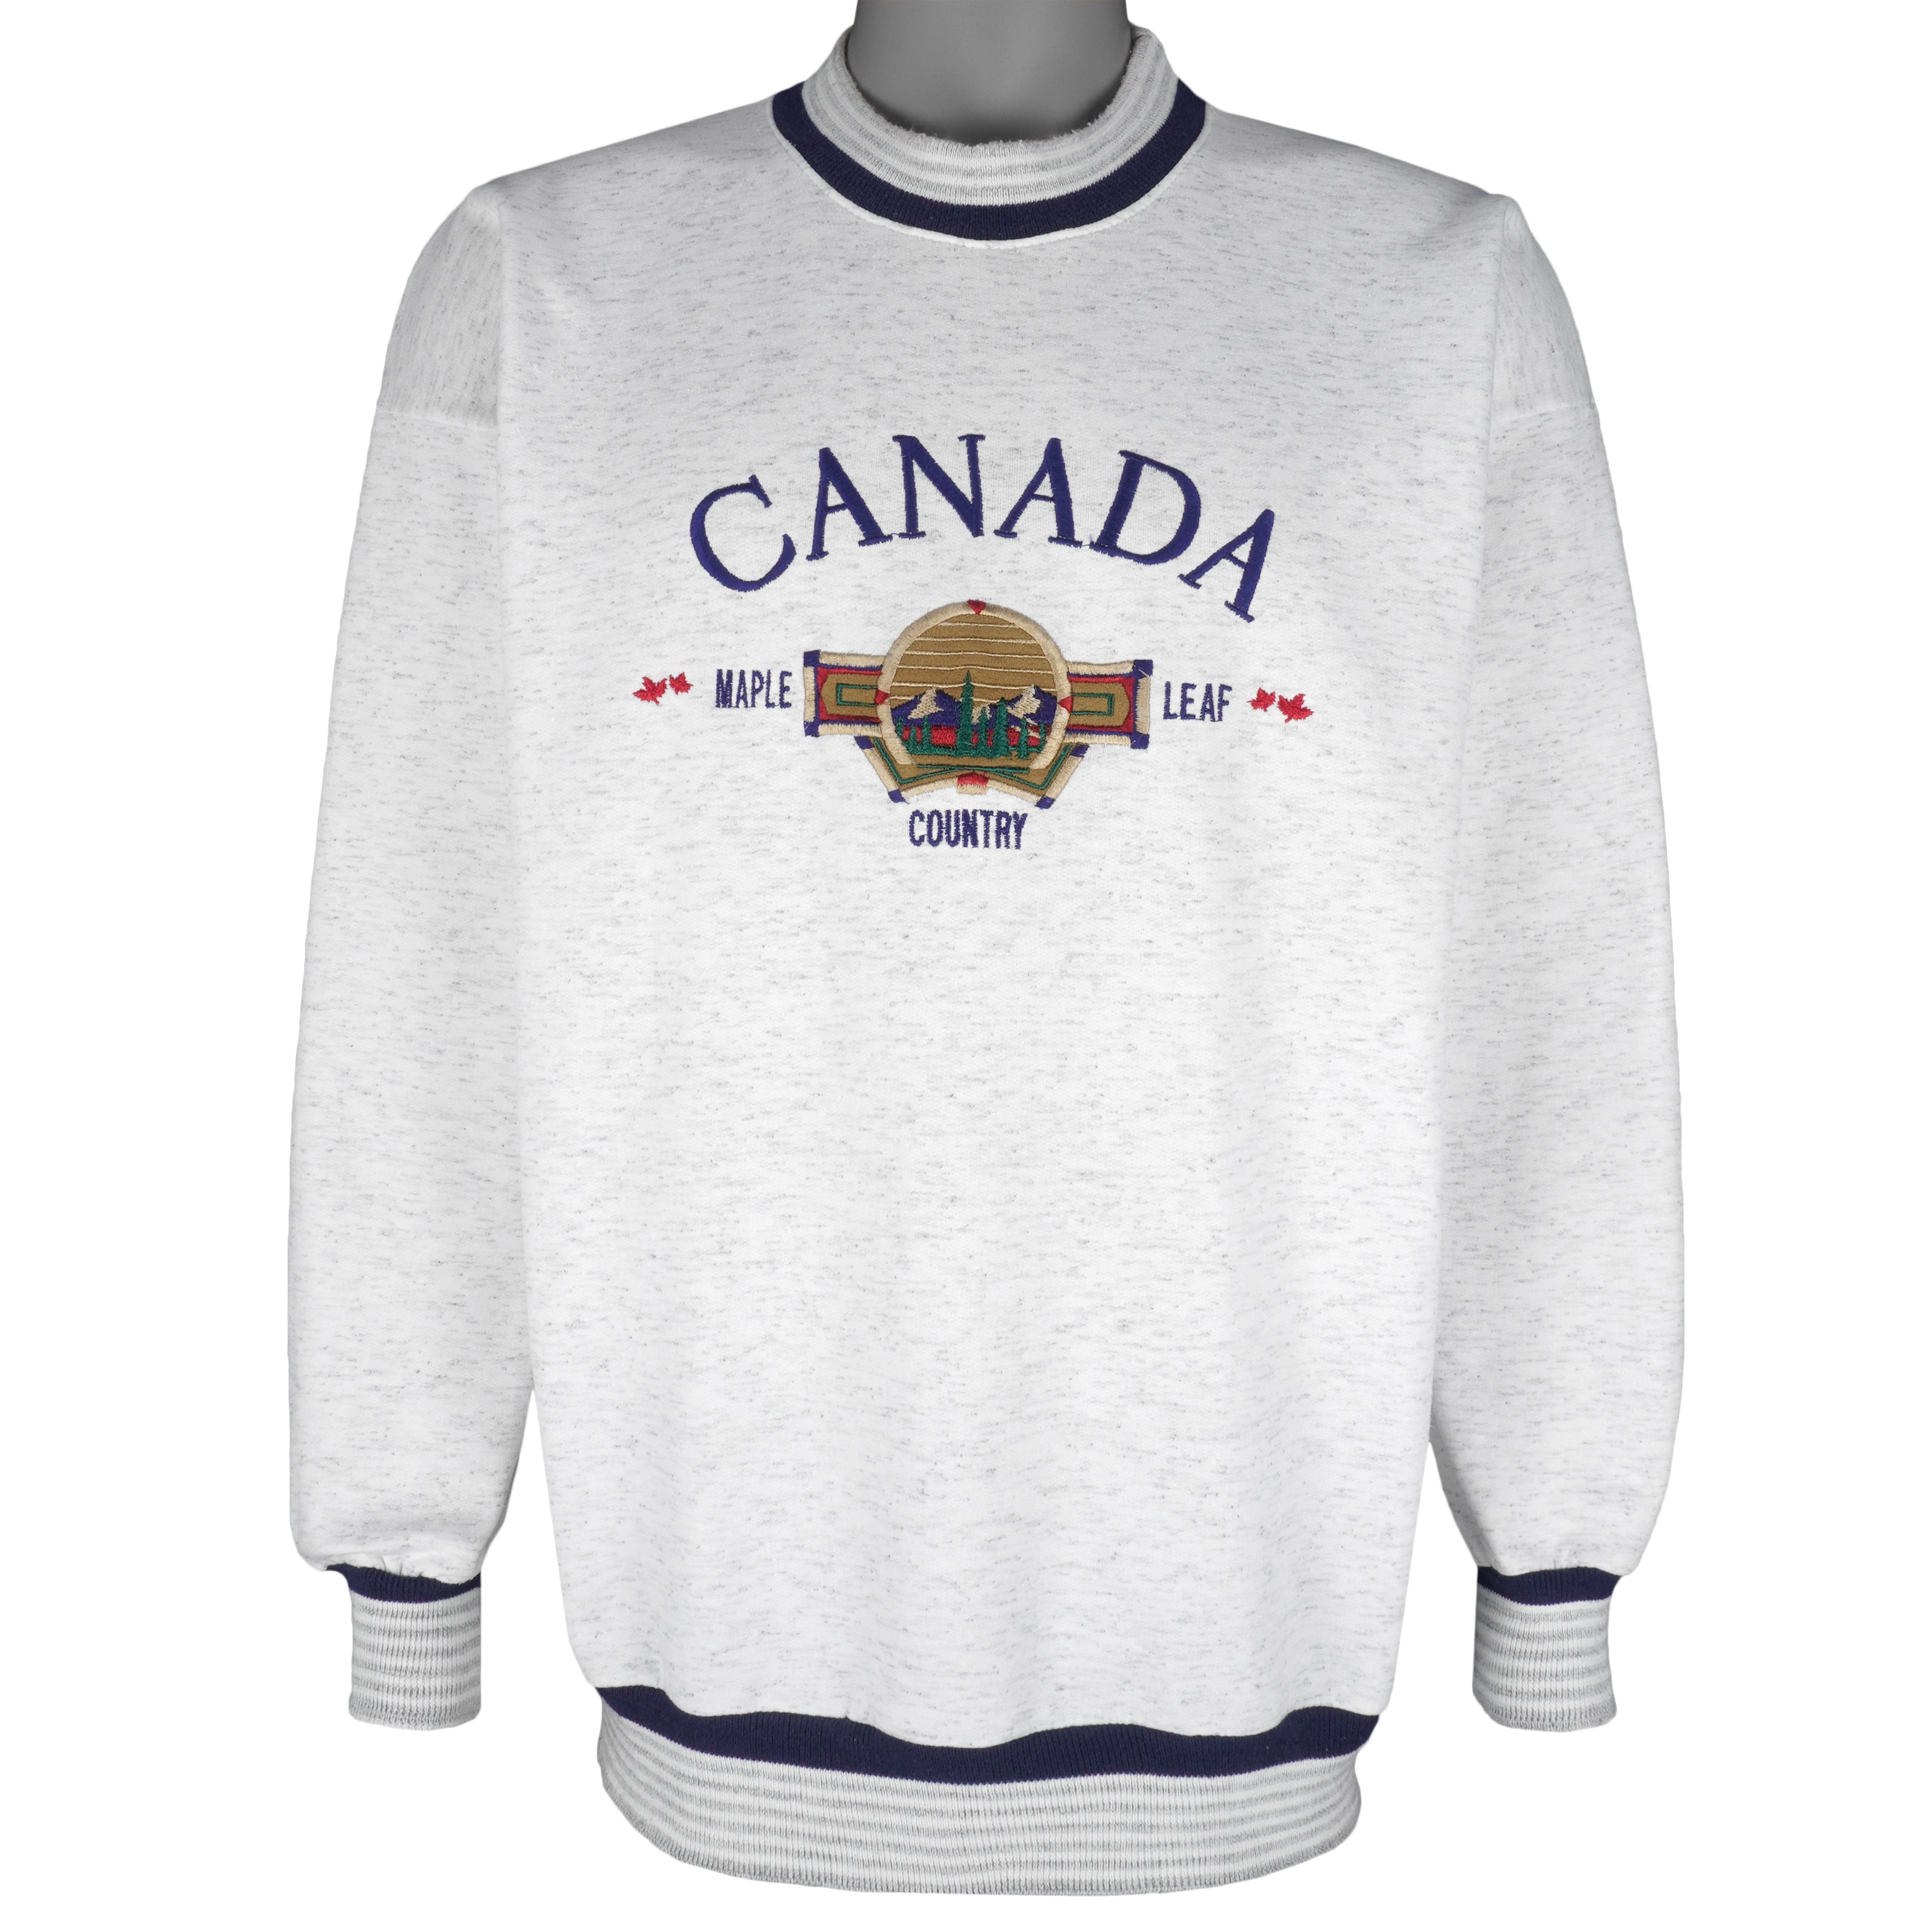 Toronto Blue Jays x Maple Leafs x Raptors Vintage Style Sweatshirt